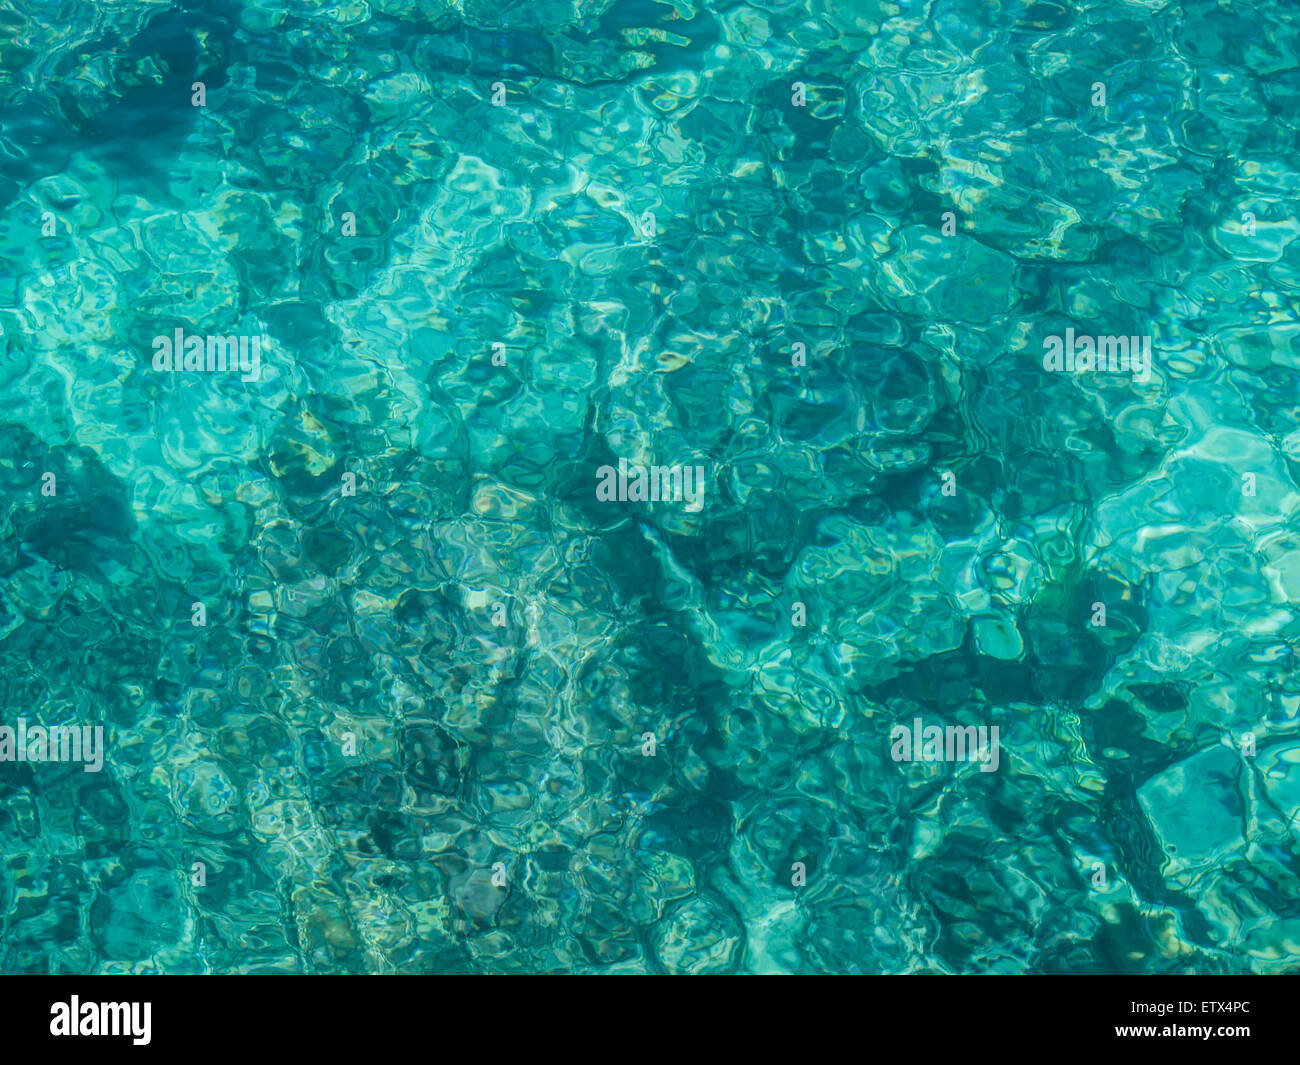 Abstraktes Bild von klaren, türkisfarbenen Meerwasser, füllen das Bild. Stockfoto